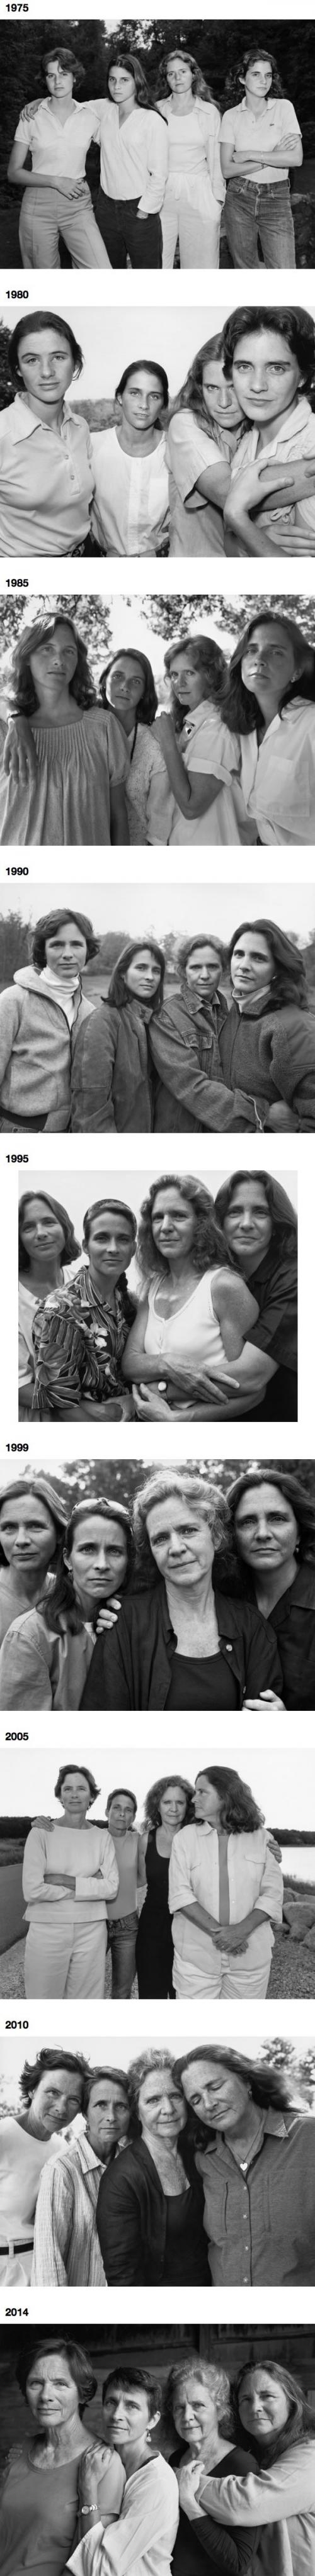 4 sestry v průběhu let